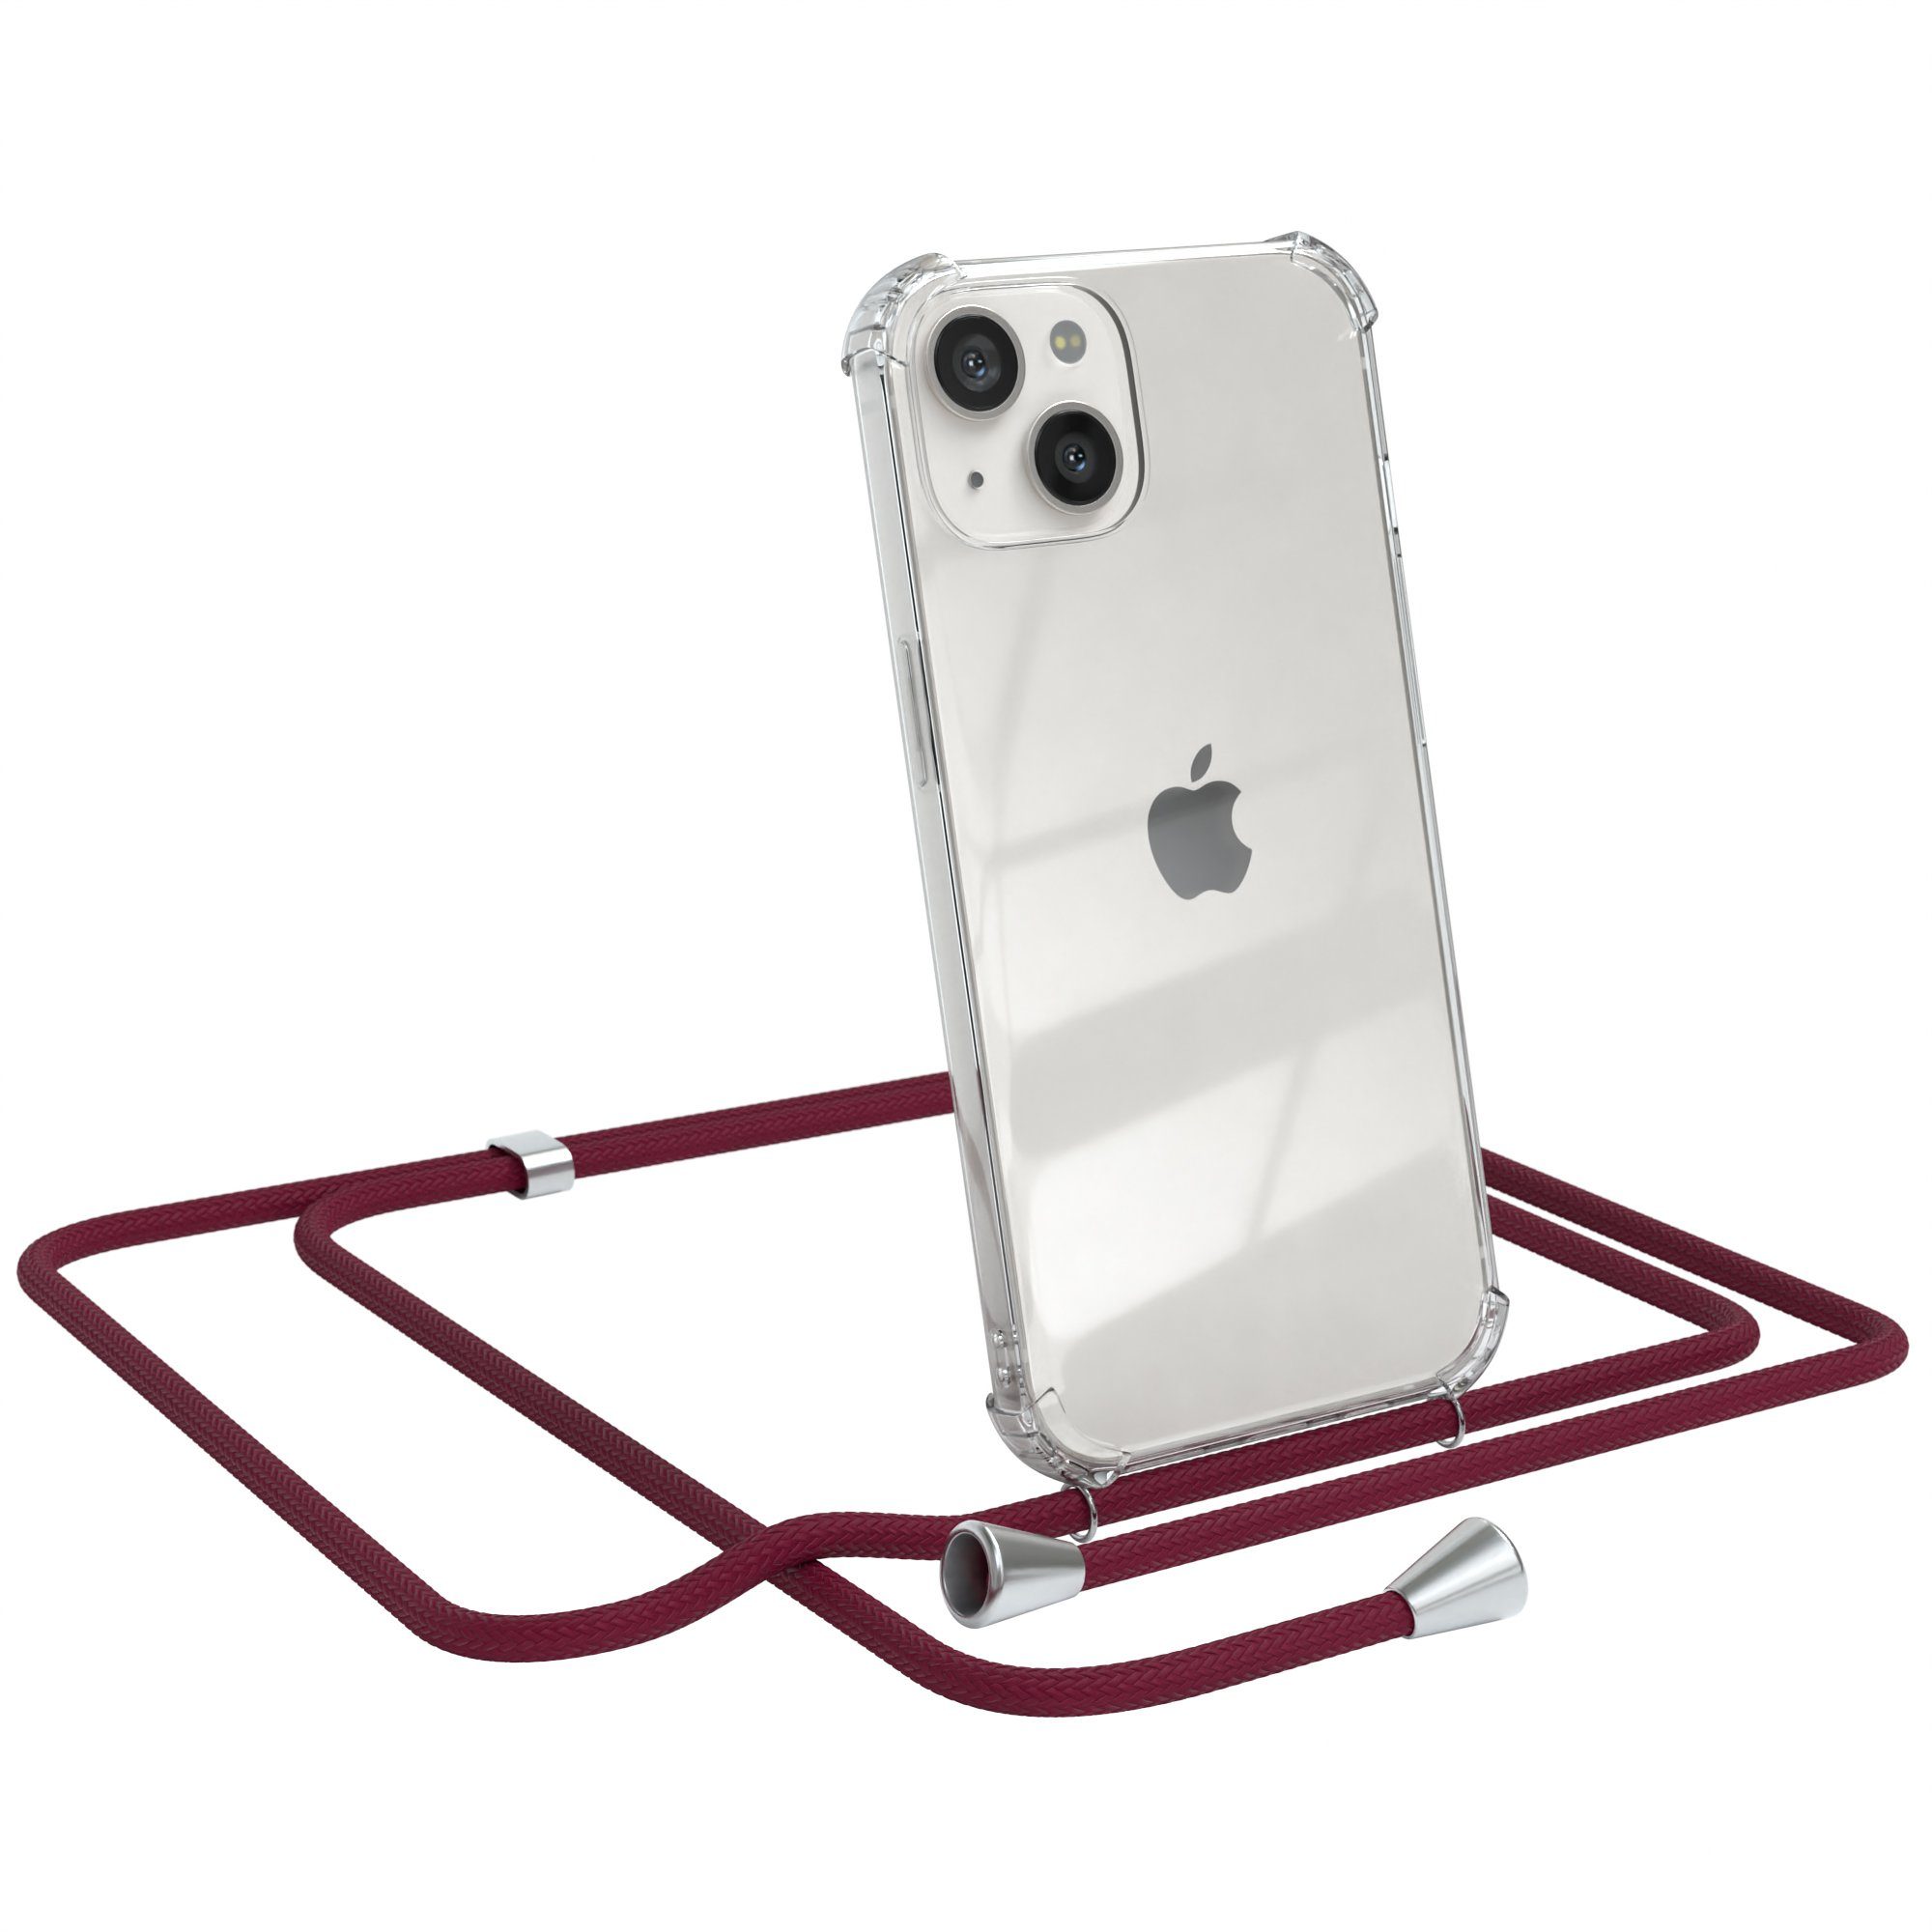 EAZY CASE Handykette Hülle mit Kette für Apple iPhone 13 6,1 Zoll, Silikonhülle durchsichtig mit Umhängeband Handytasche Bordeaux Rot